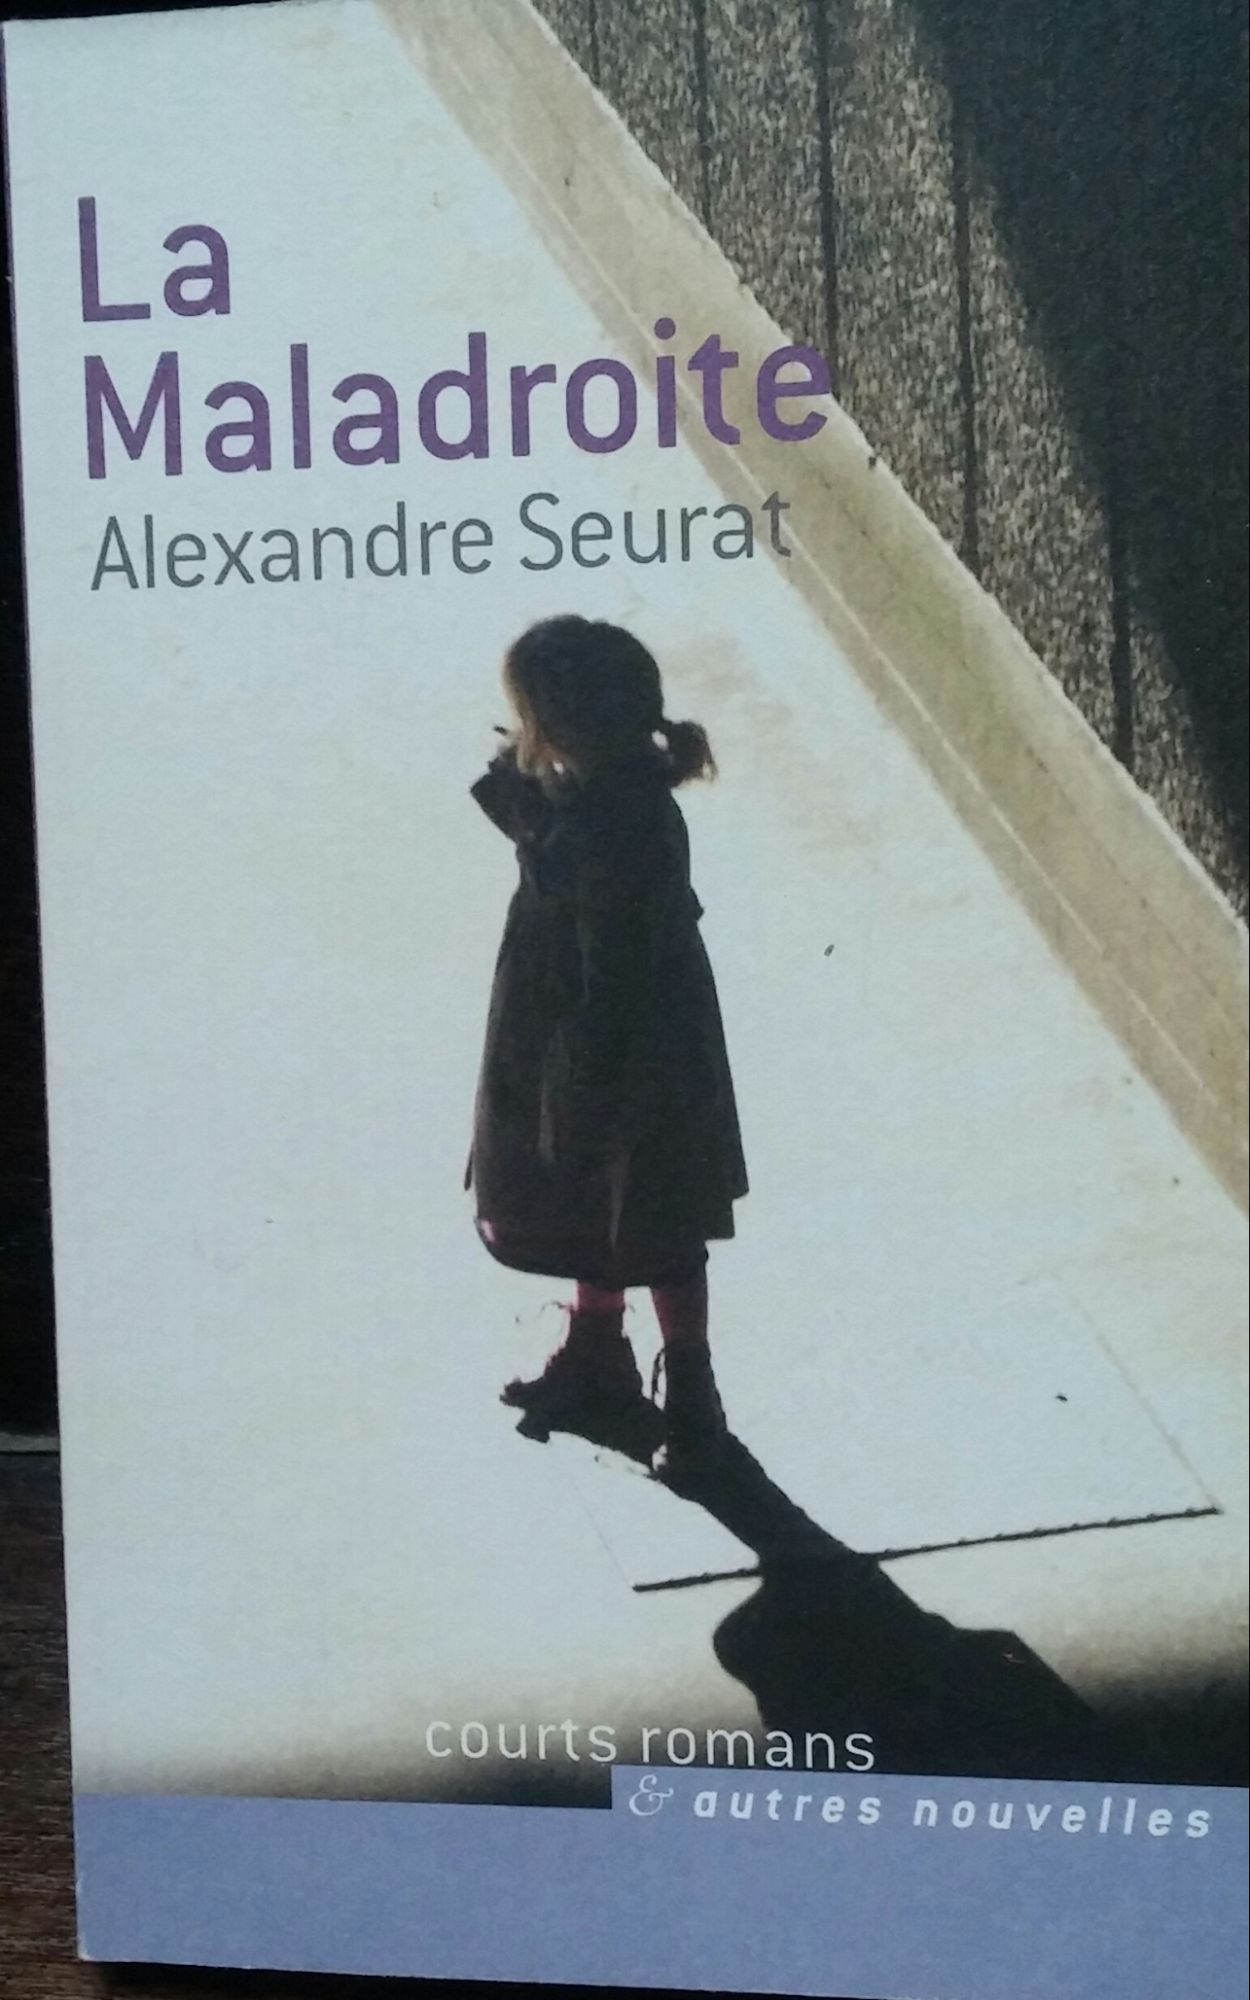 La Maladroite